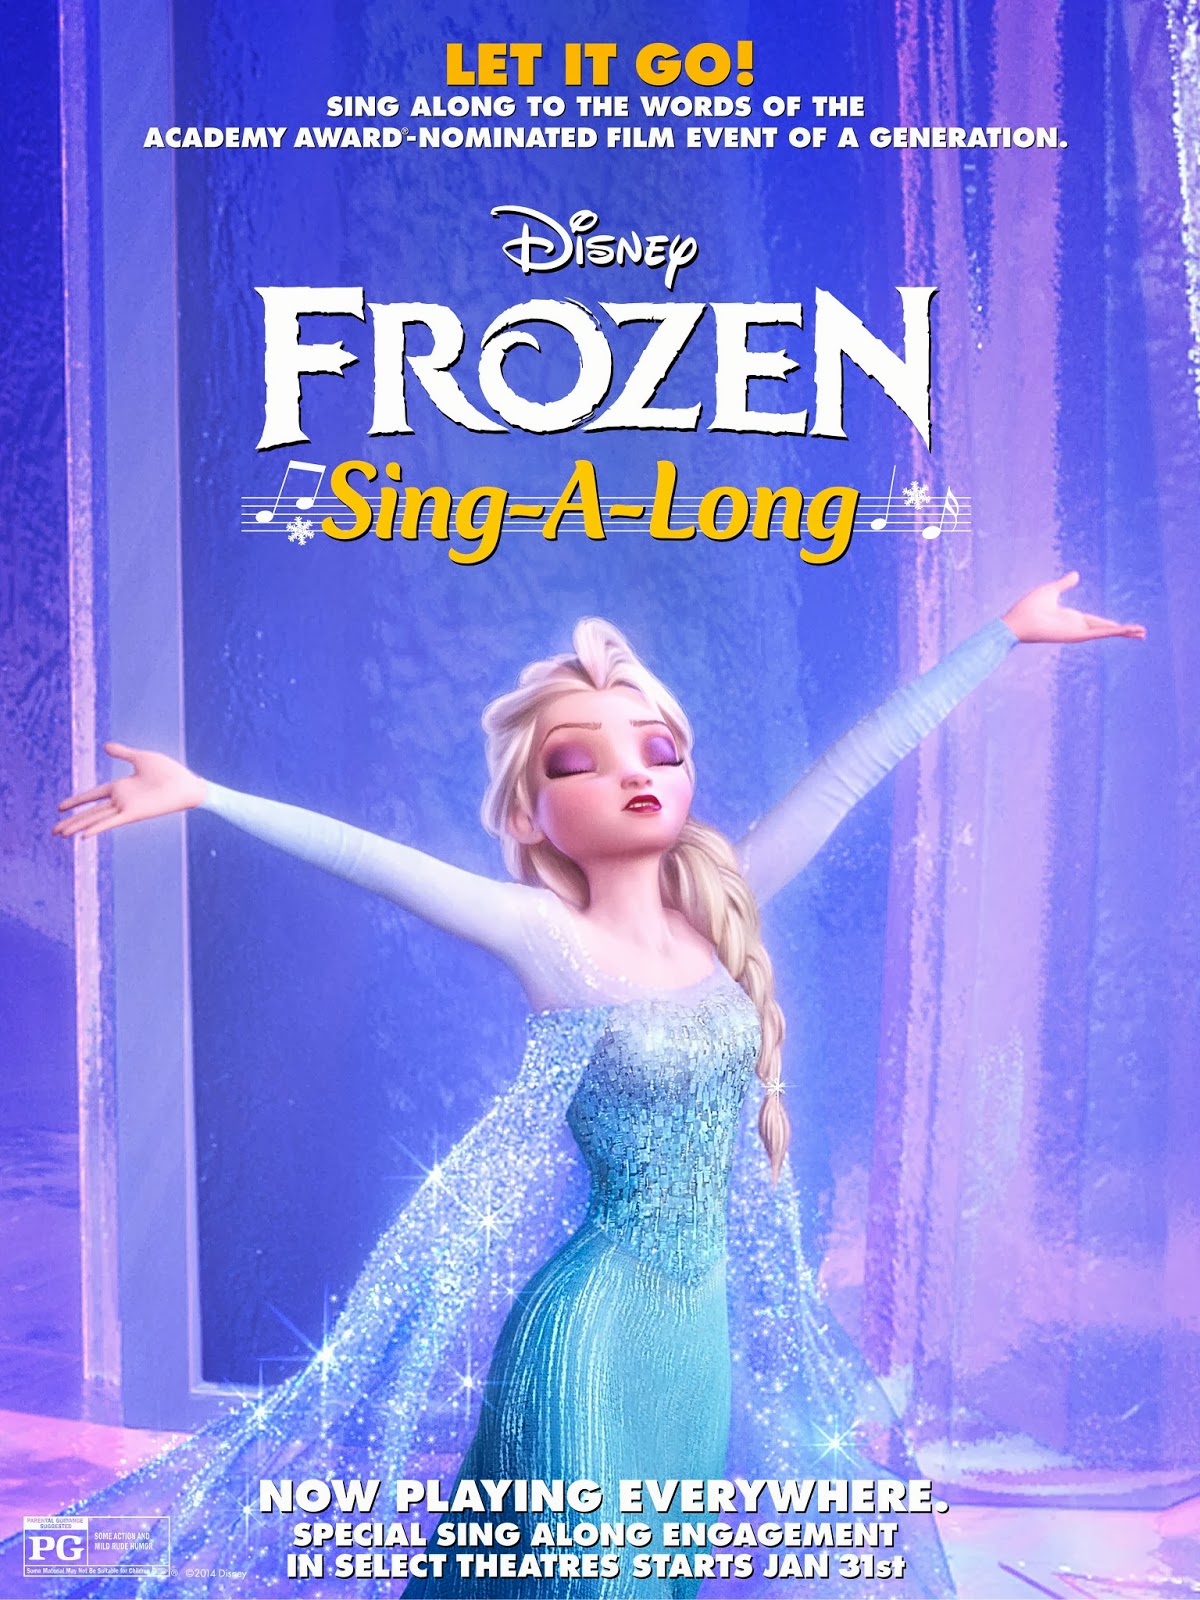 Disney's FROZEN Sing-Along